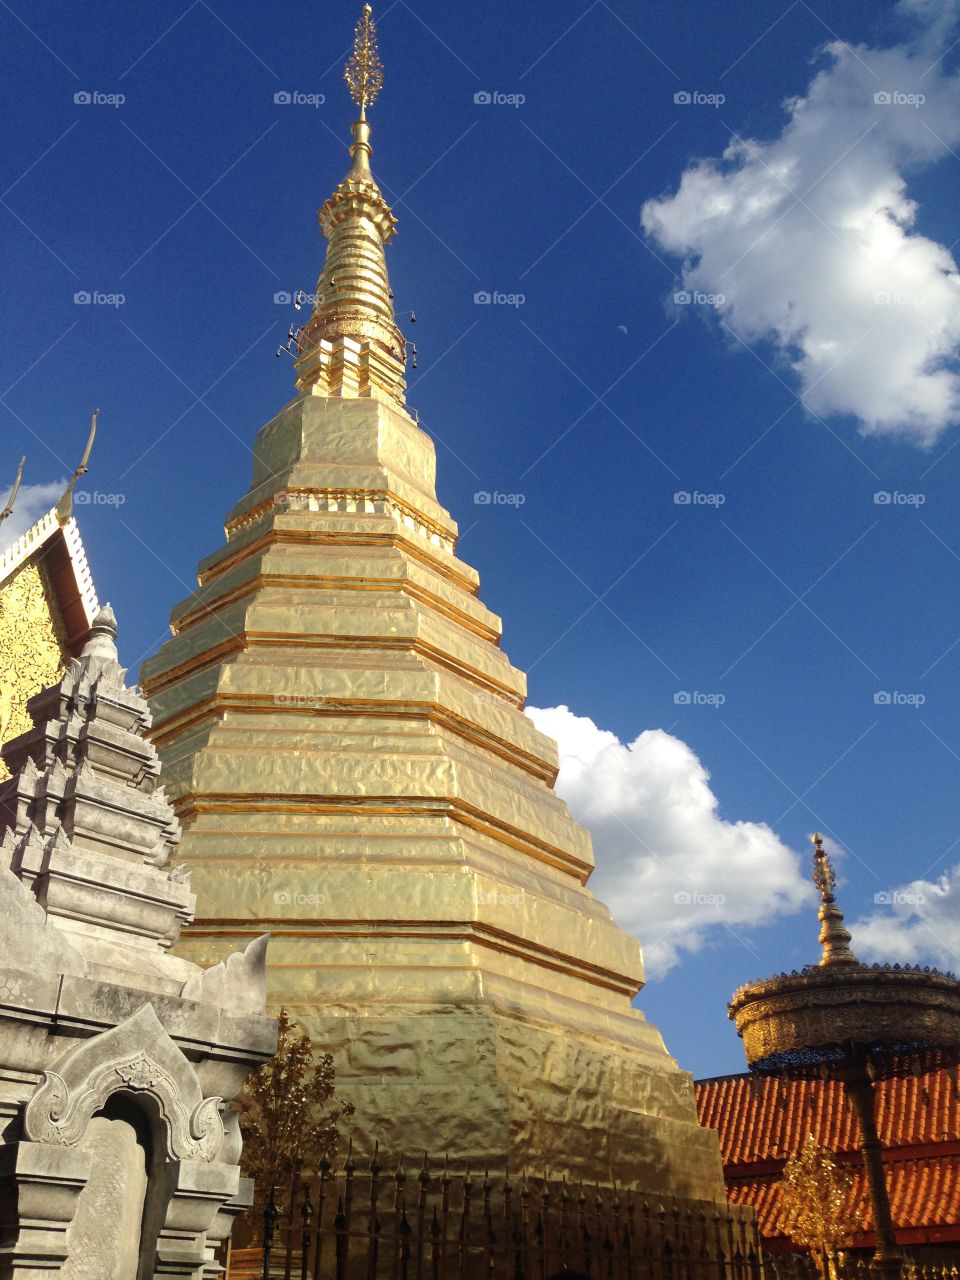 Thailand Temple at Ora